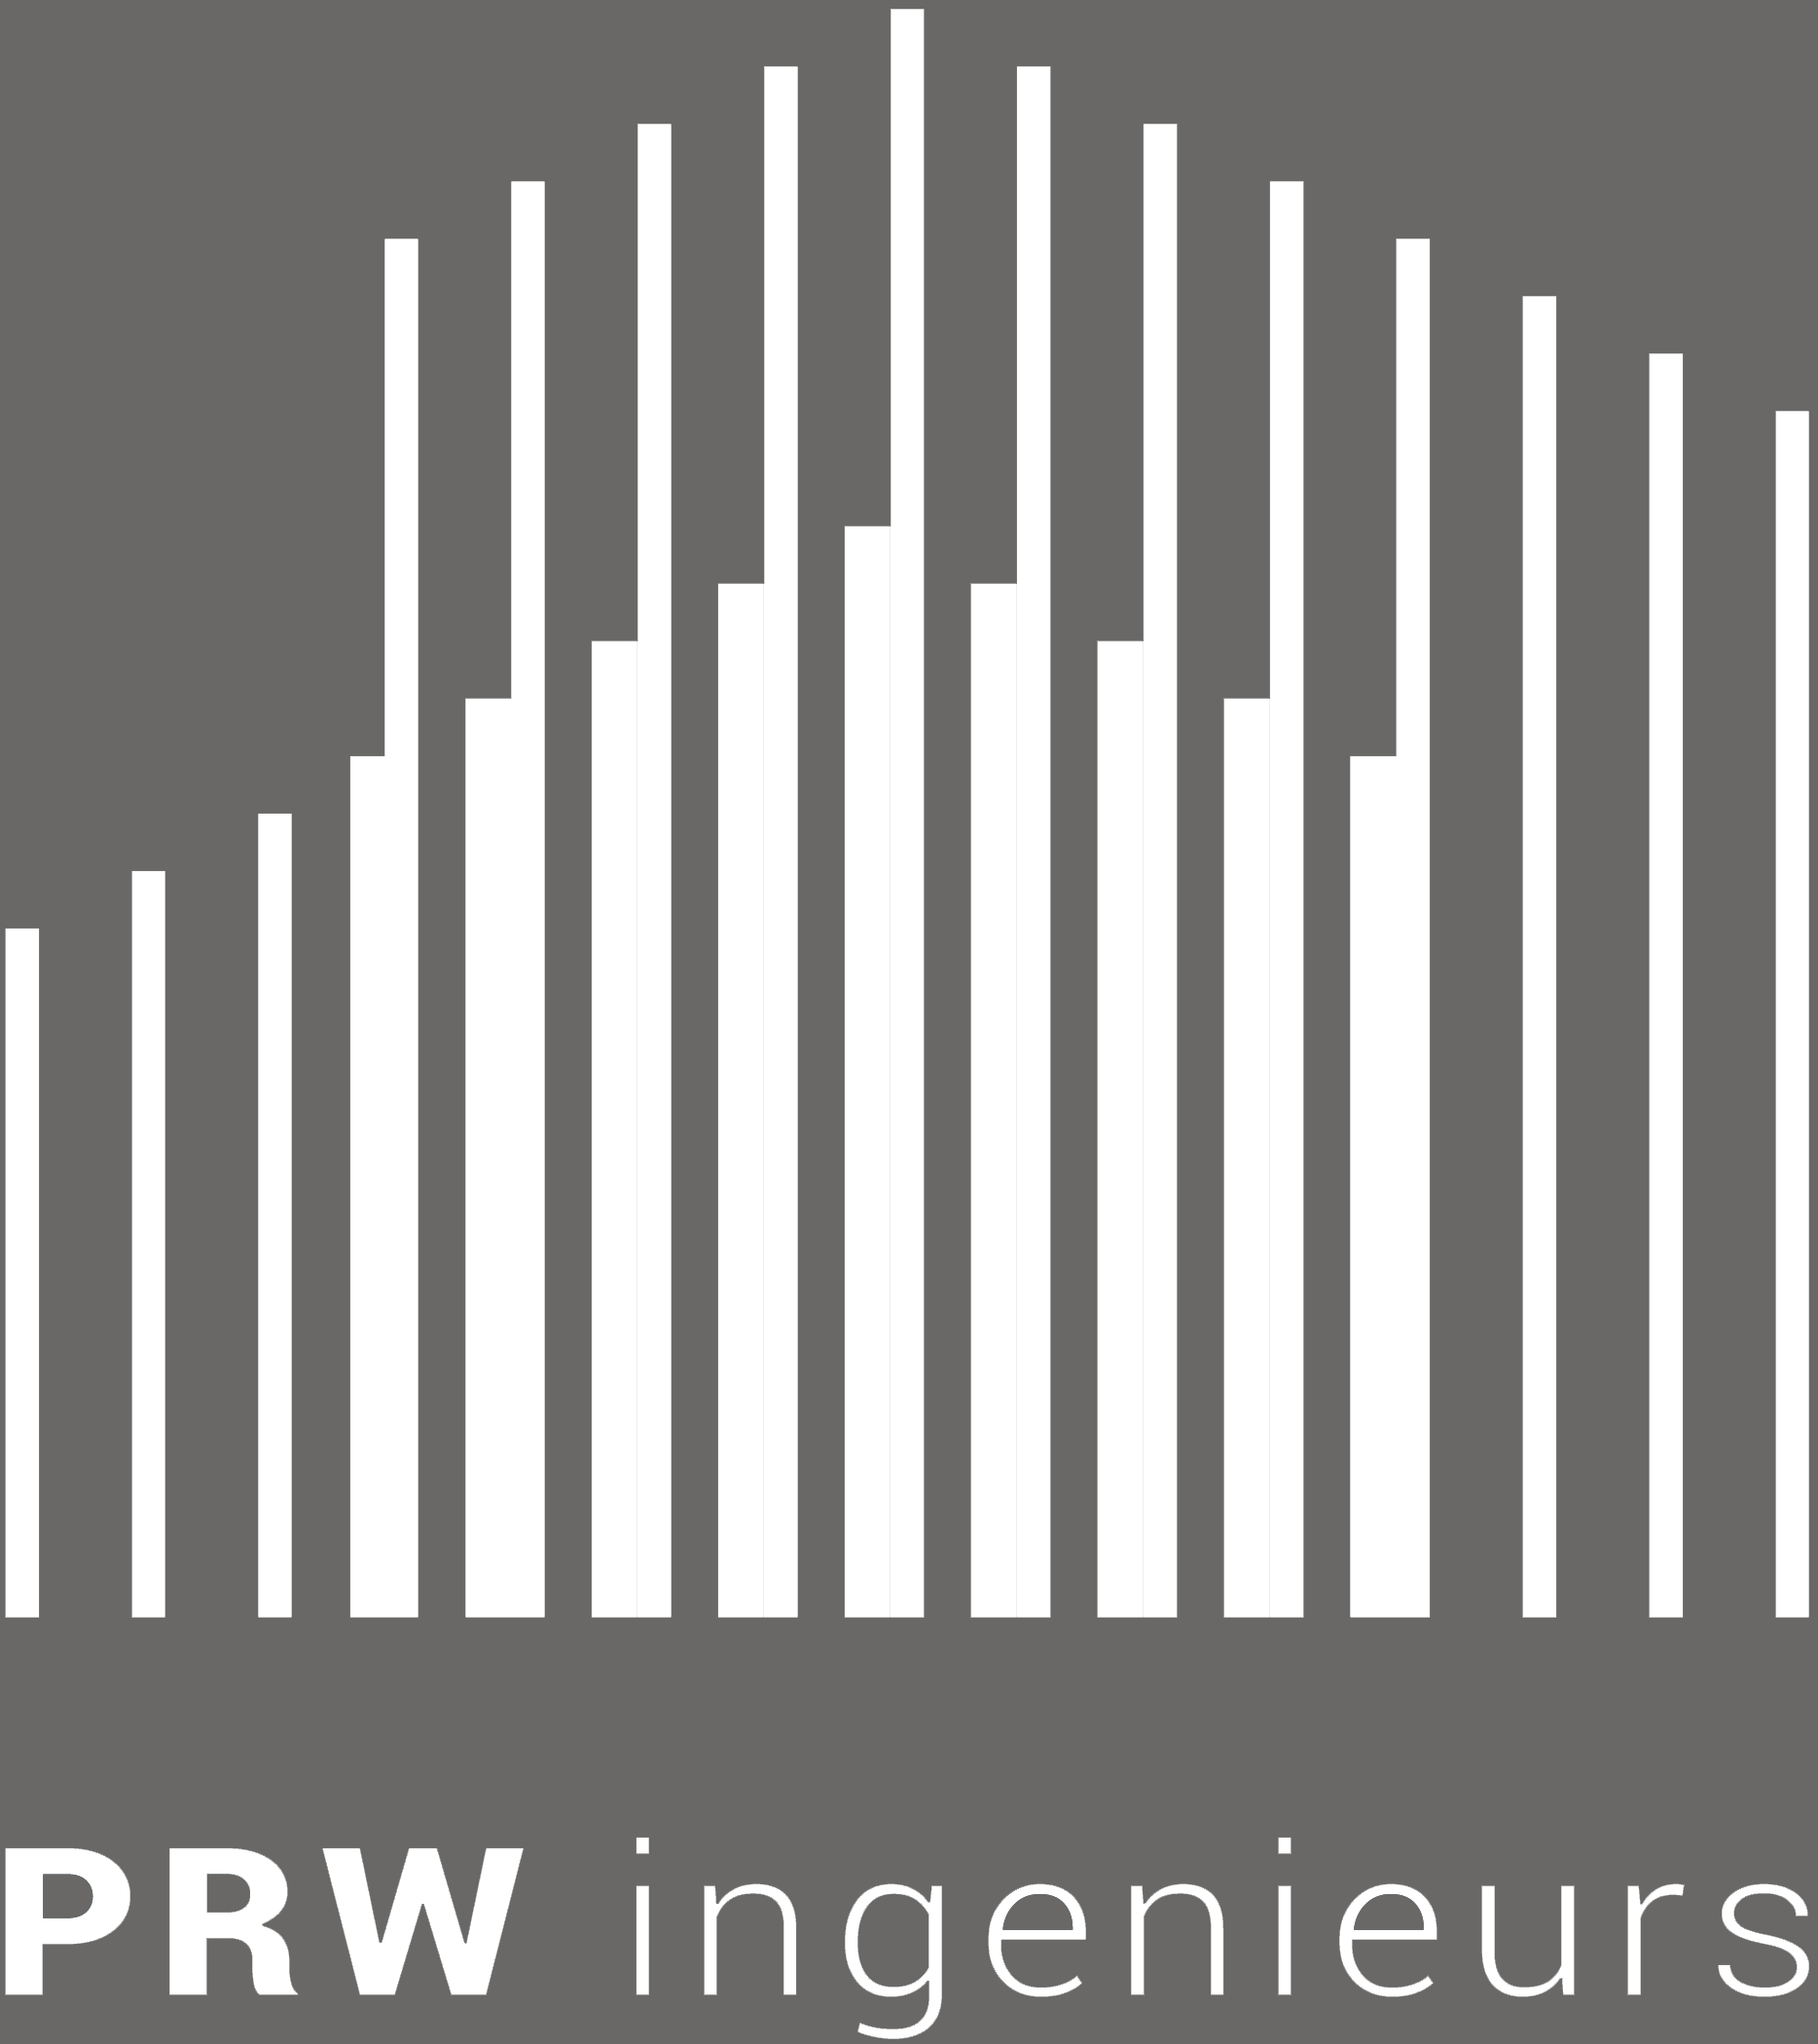 PRW ingenieurs is in 2017 opgericht als Penning & Van Weerd. PRW staat voor Penning, Roijen & Van Weerd.